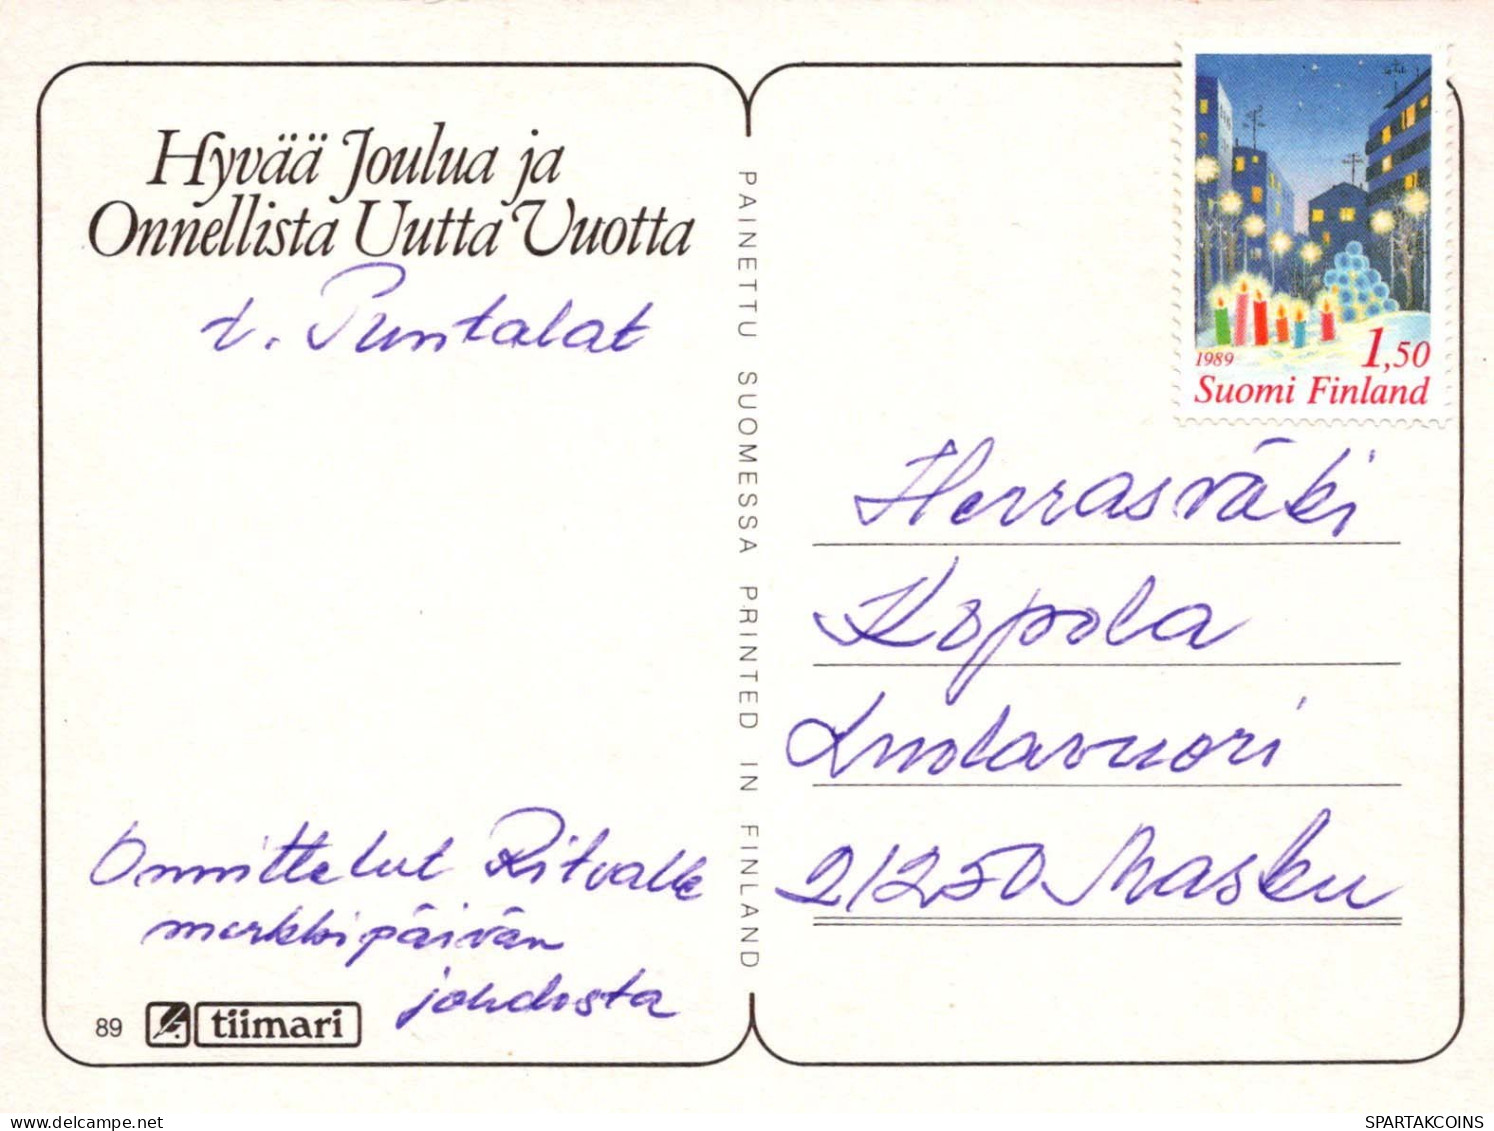 KINDER KINDER Szene S Landschafts Vintage Ansichtskarte Postkarte CPSM #PBU154.DE - Szenen & Landschaften